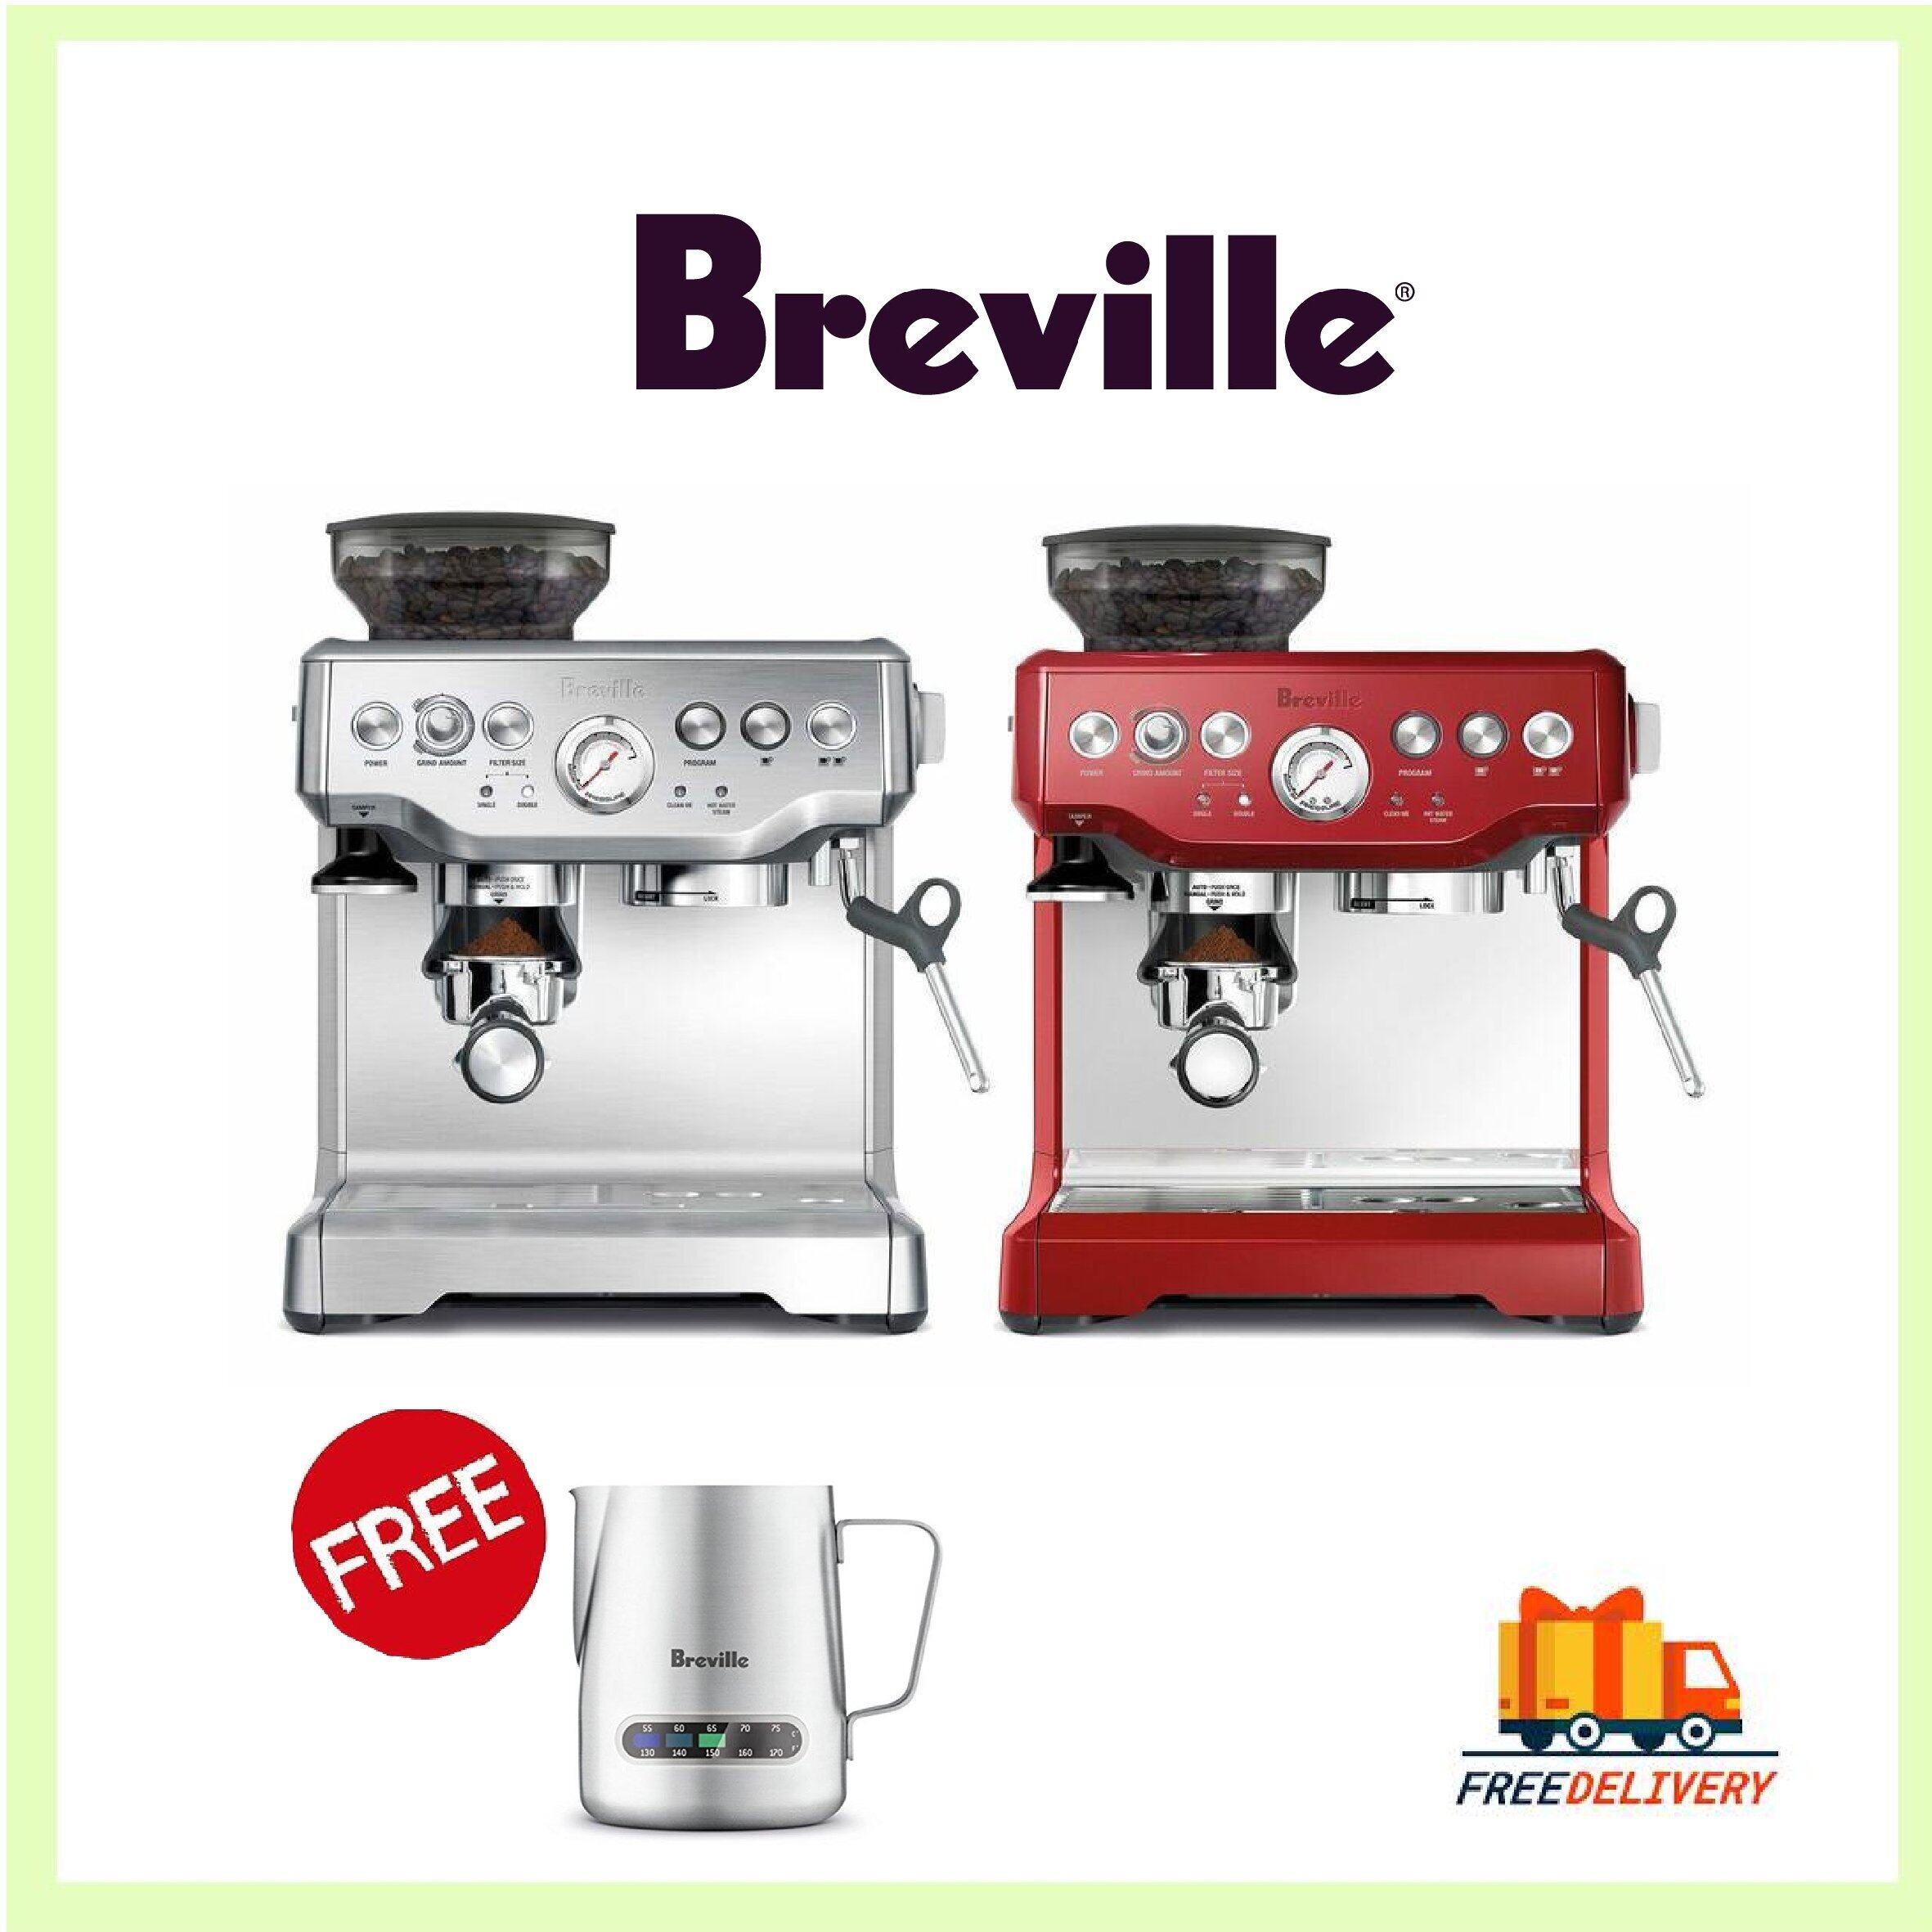 Breville coffee machine malaysia